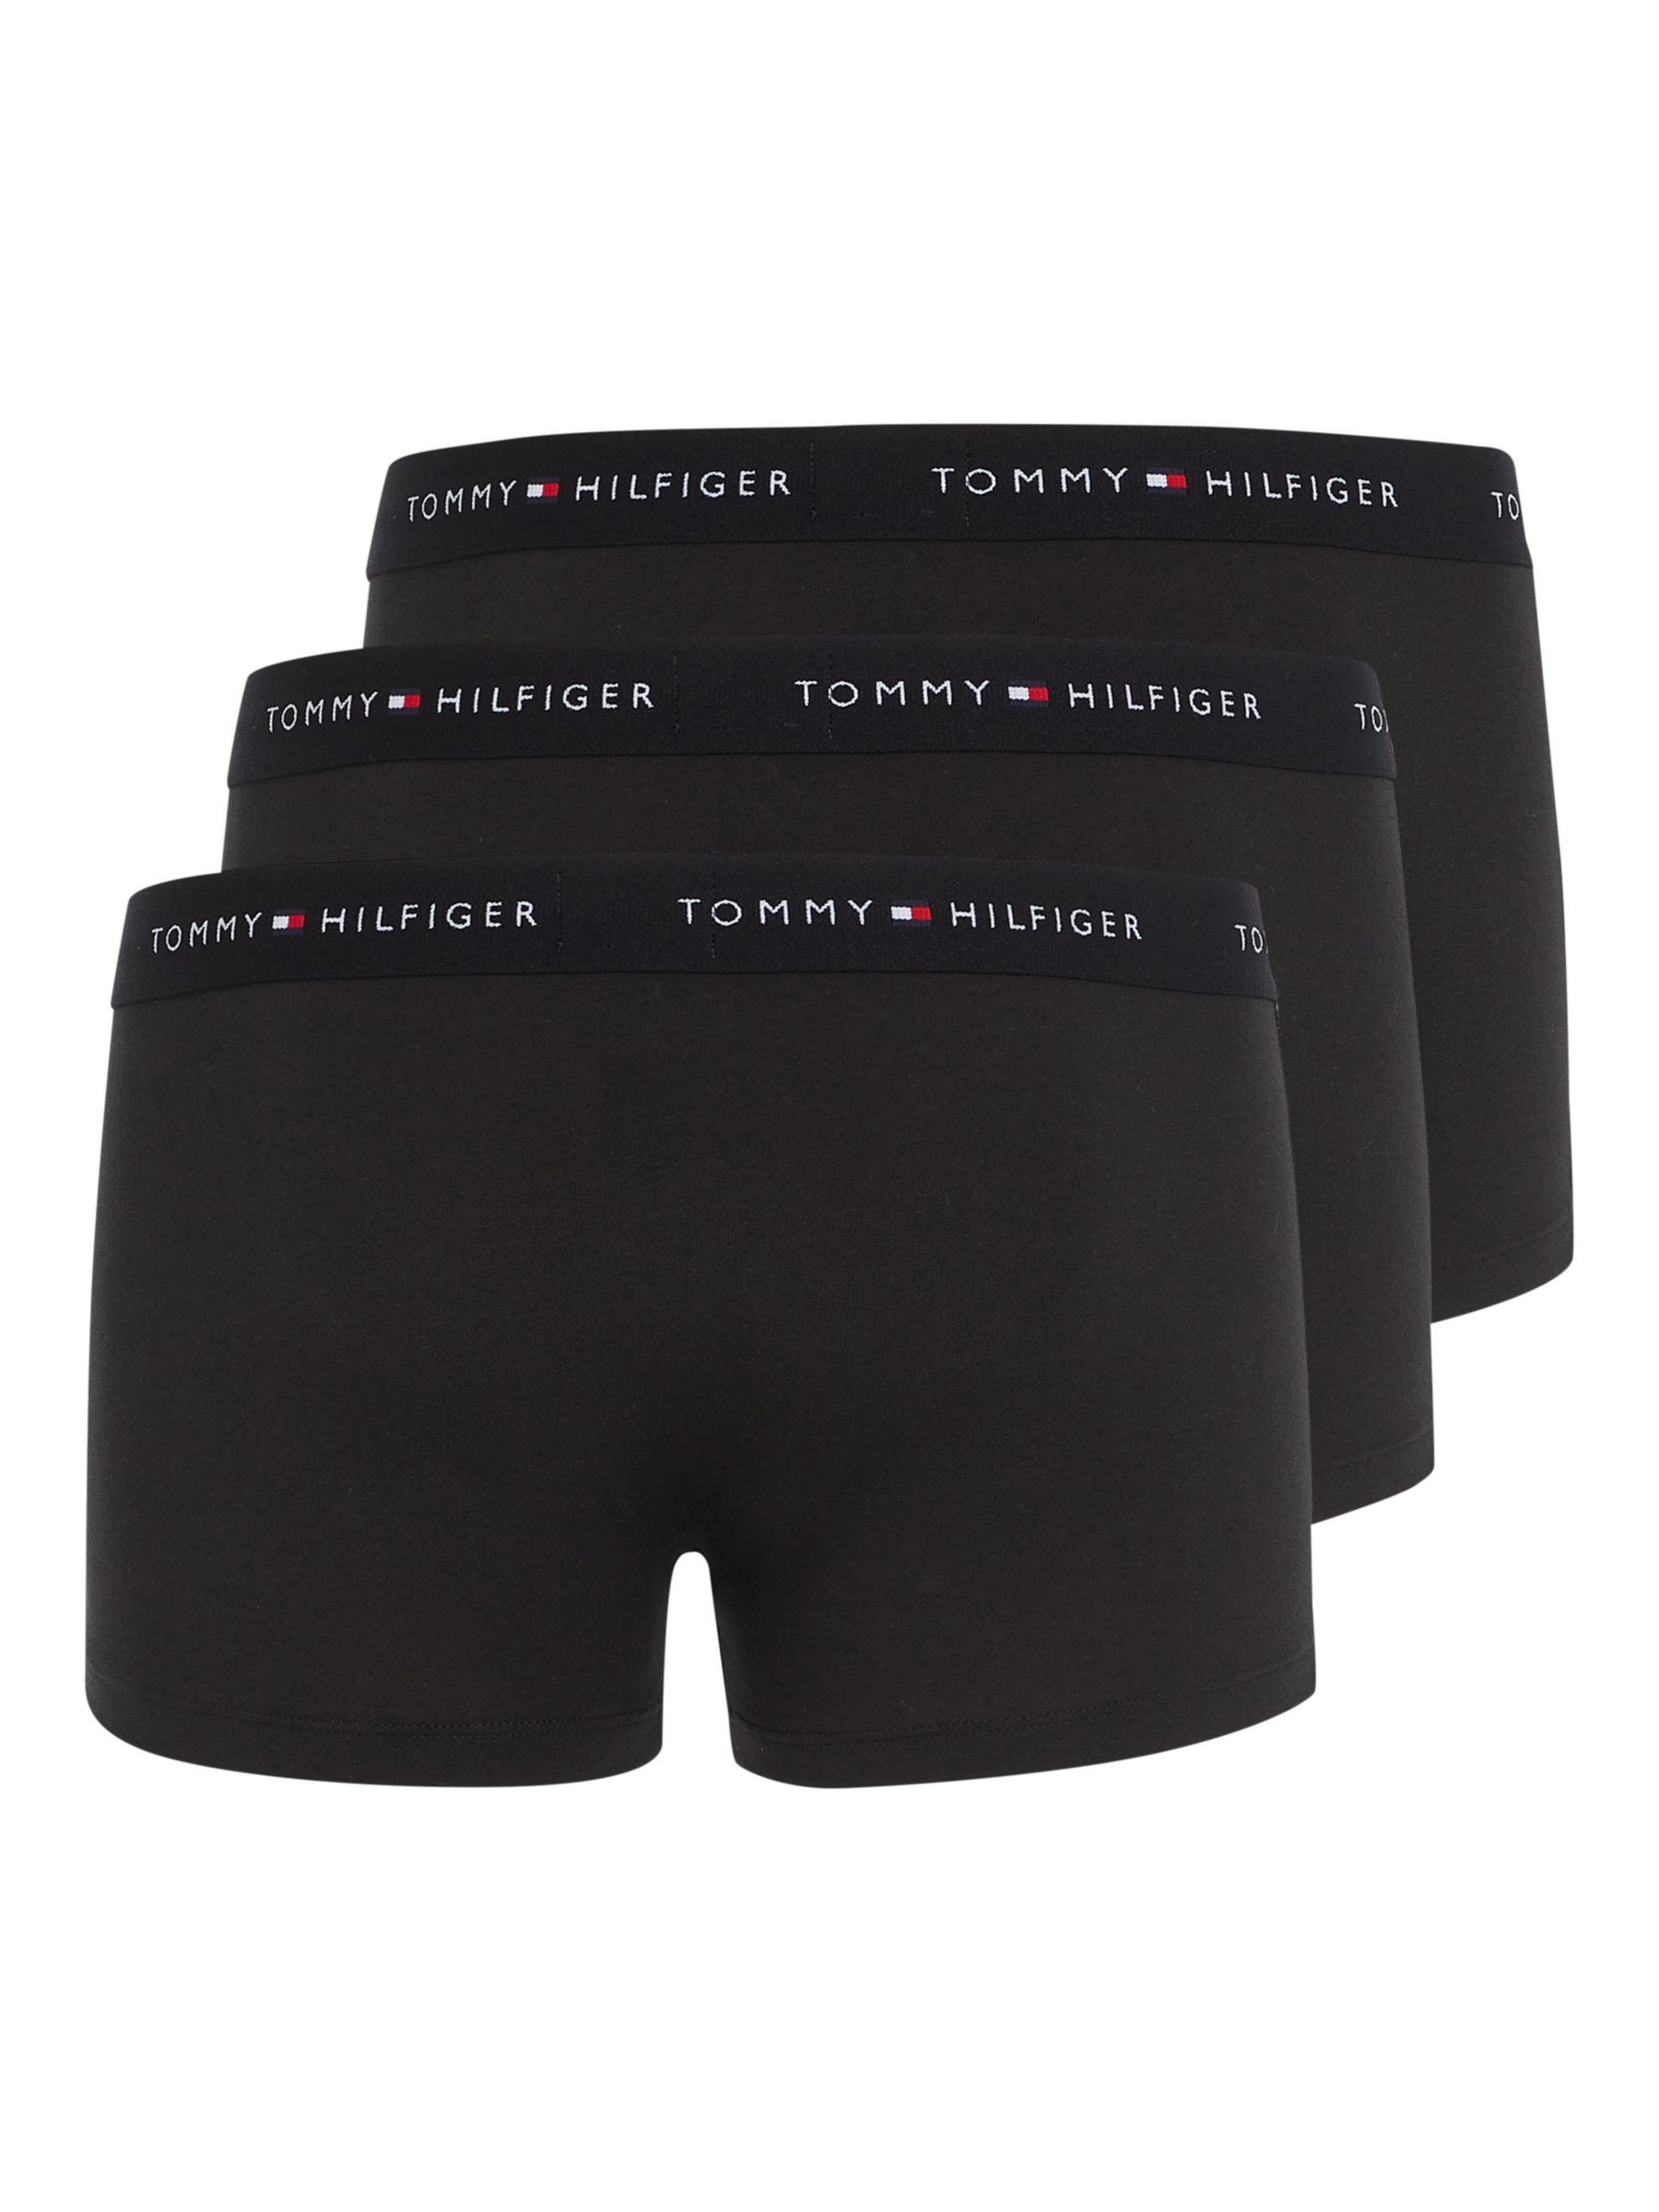 Tommy Hilfiger Essential Cotton Logo Trunks, Pack of 3, Black, L